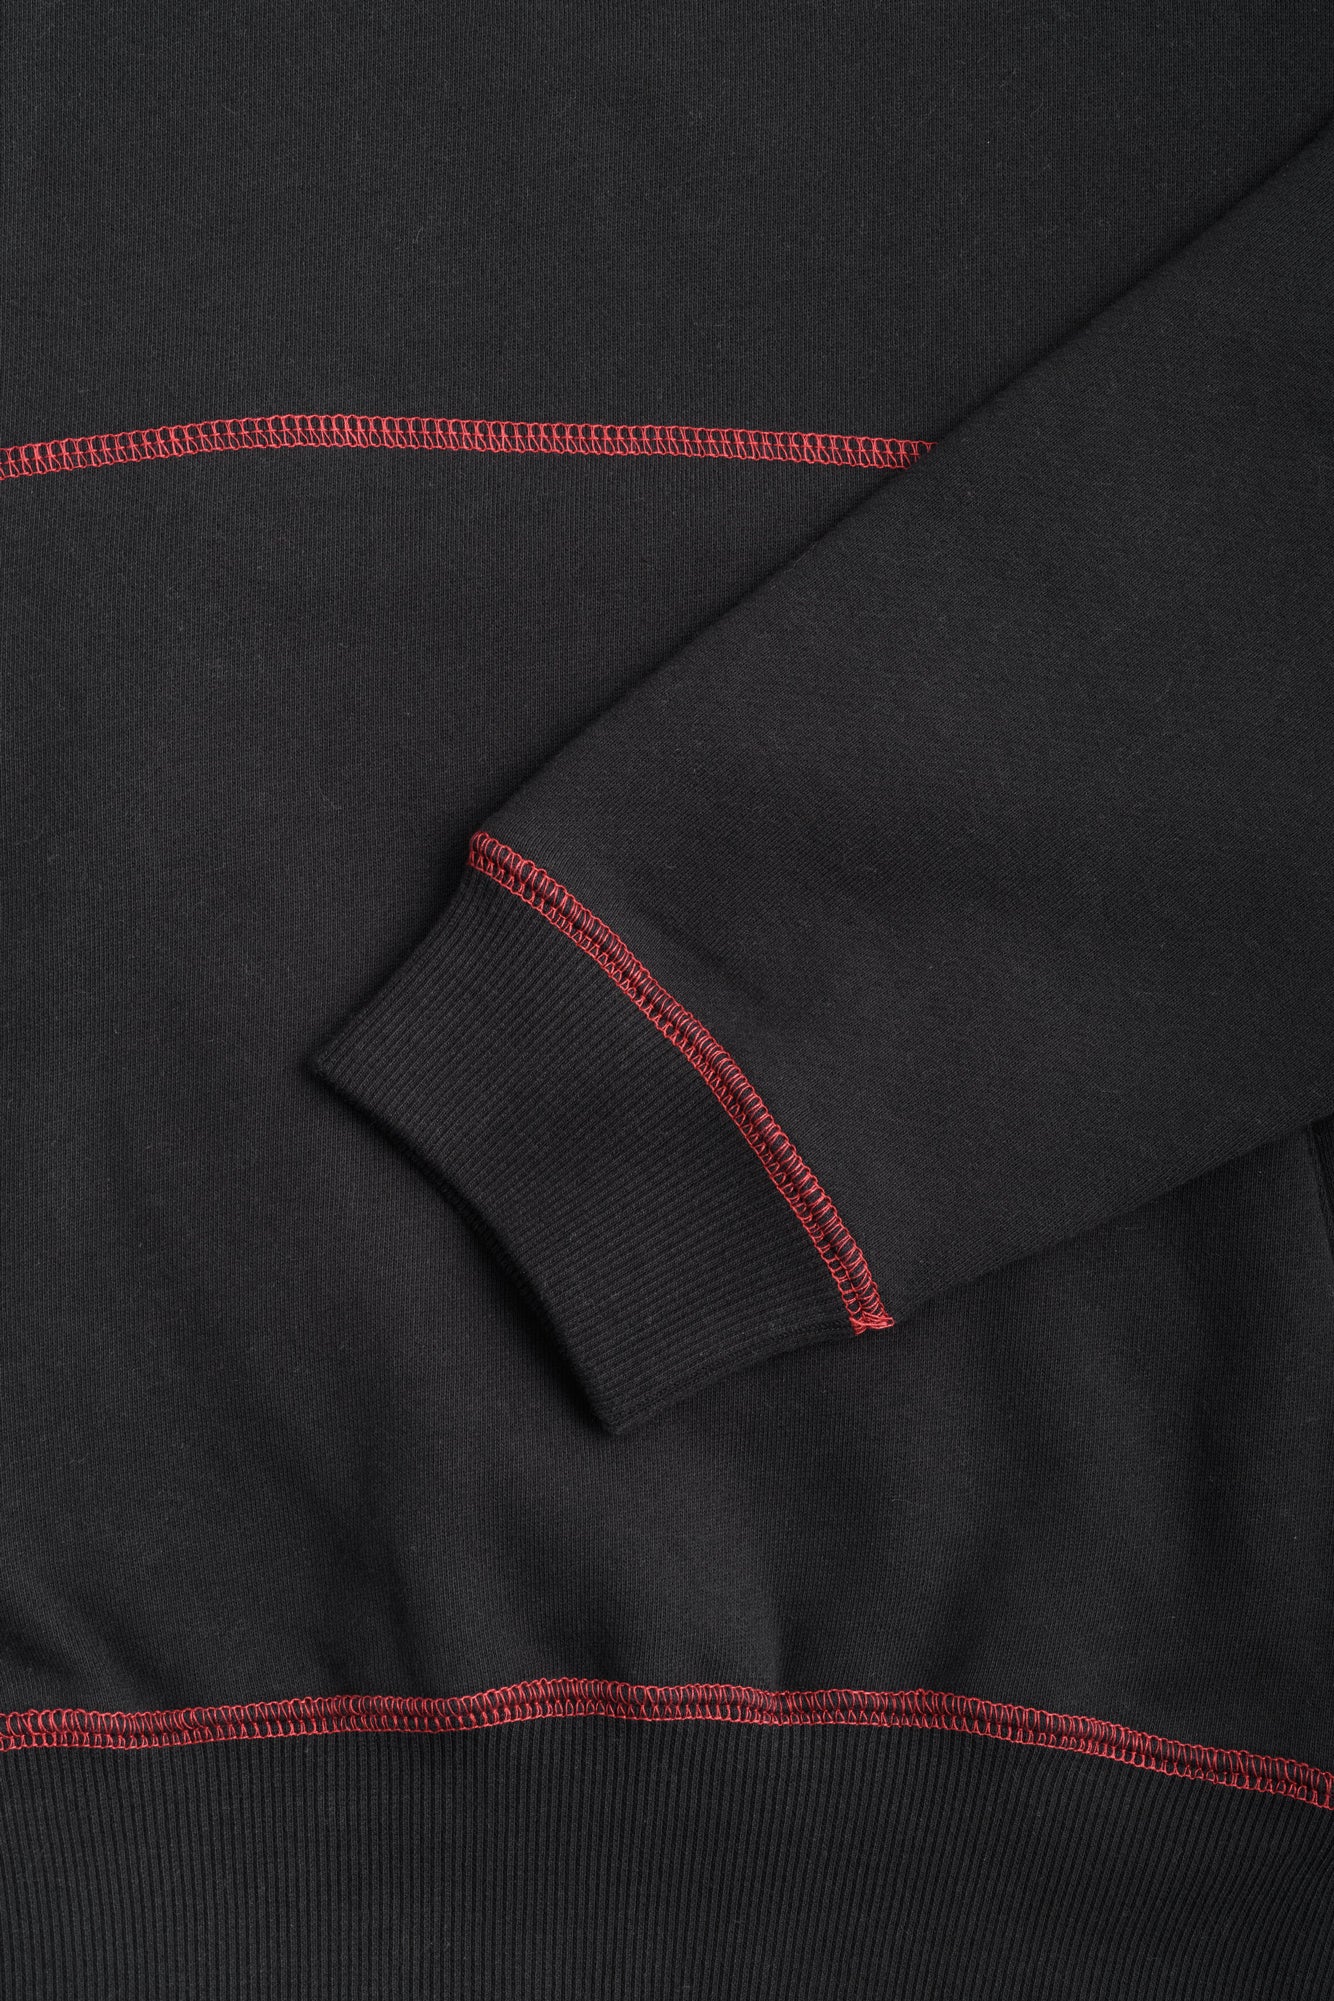 YS Sport Contrast Hood (Black/Red)